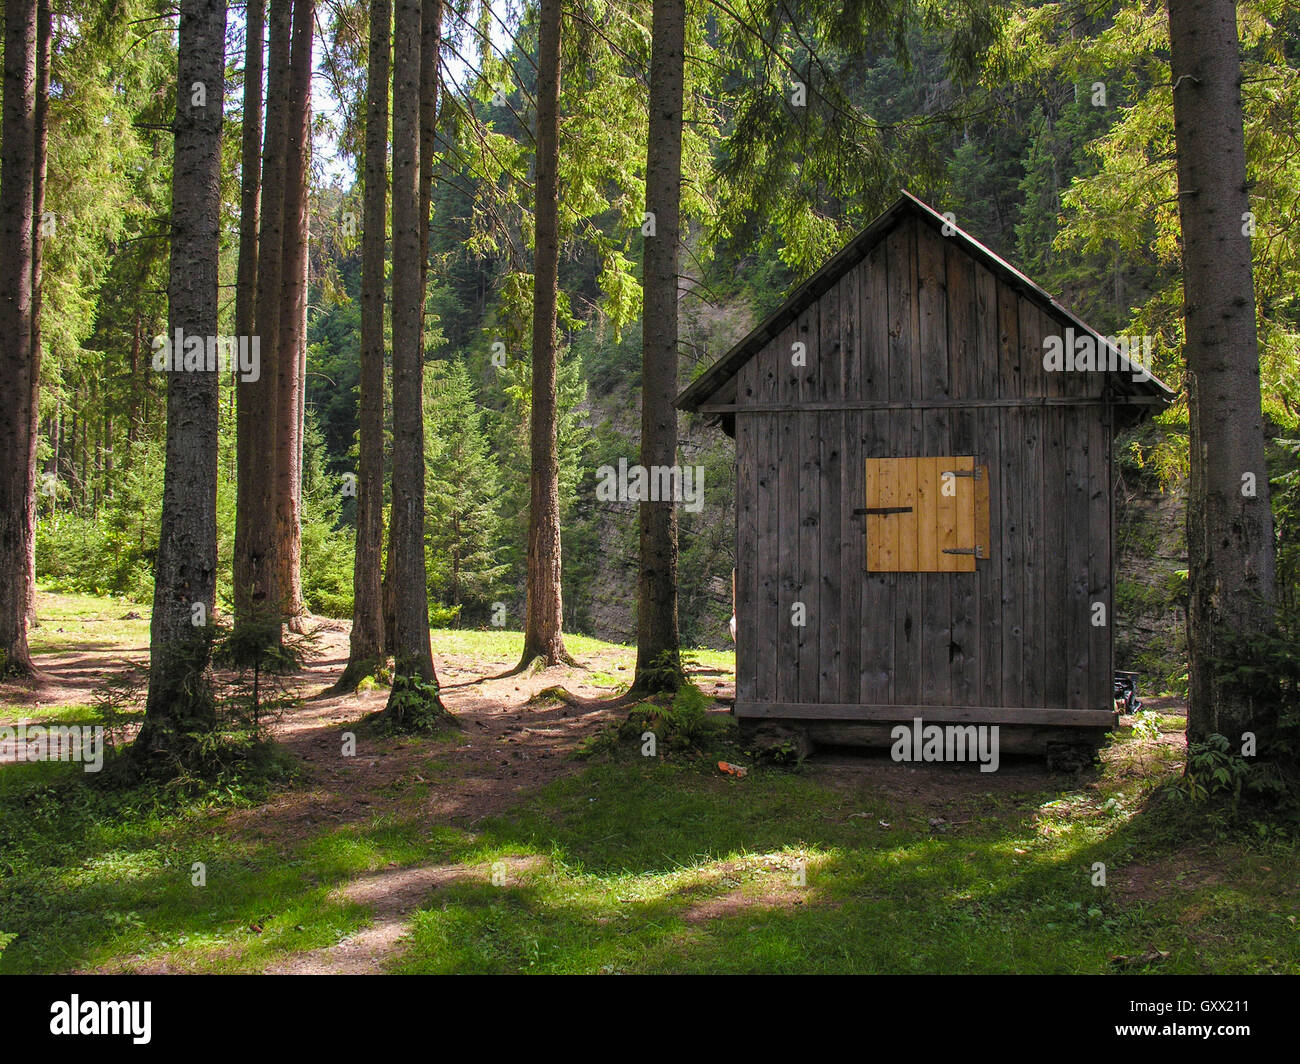 Petite maison en bois avec des volets dans une clairière dans les bois Banque D'Images